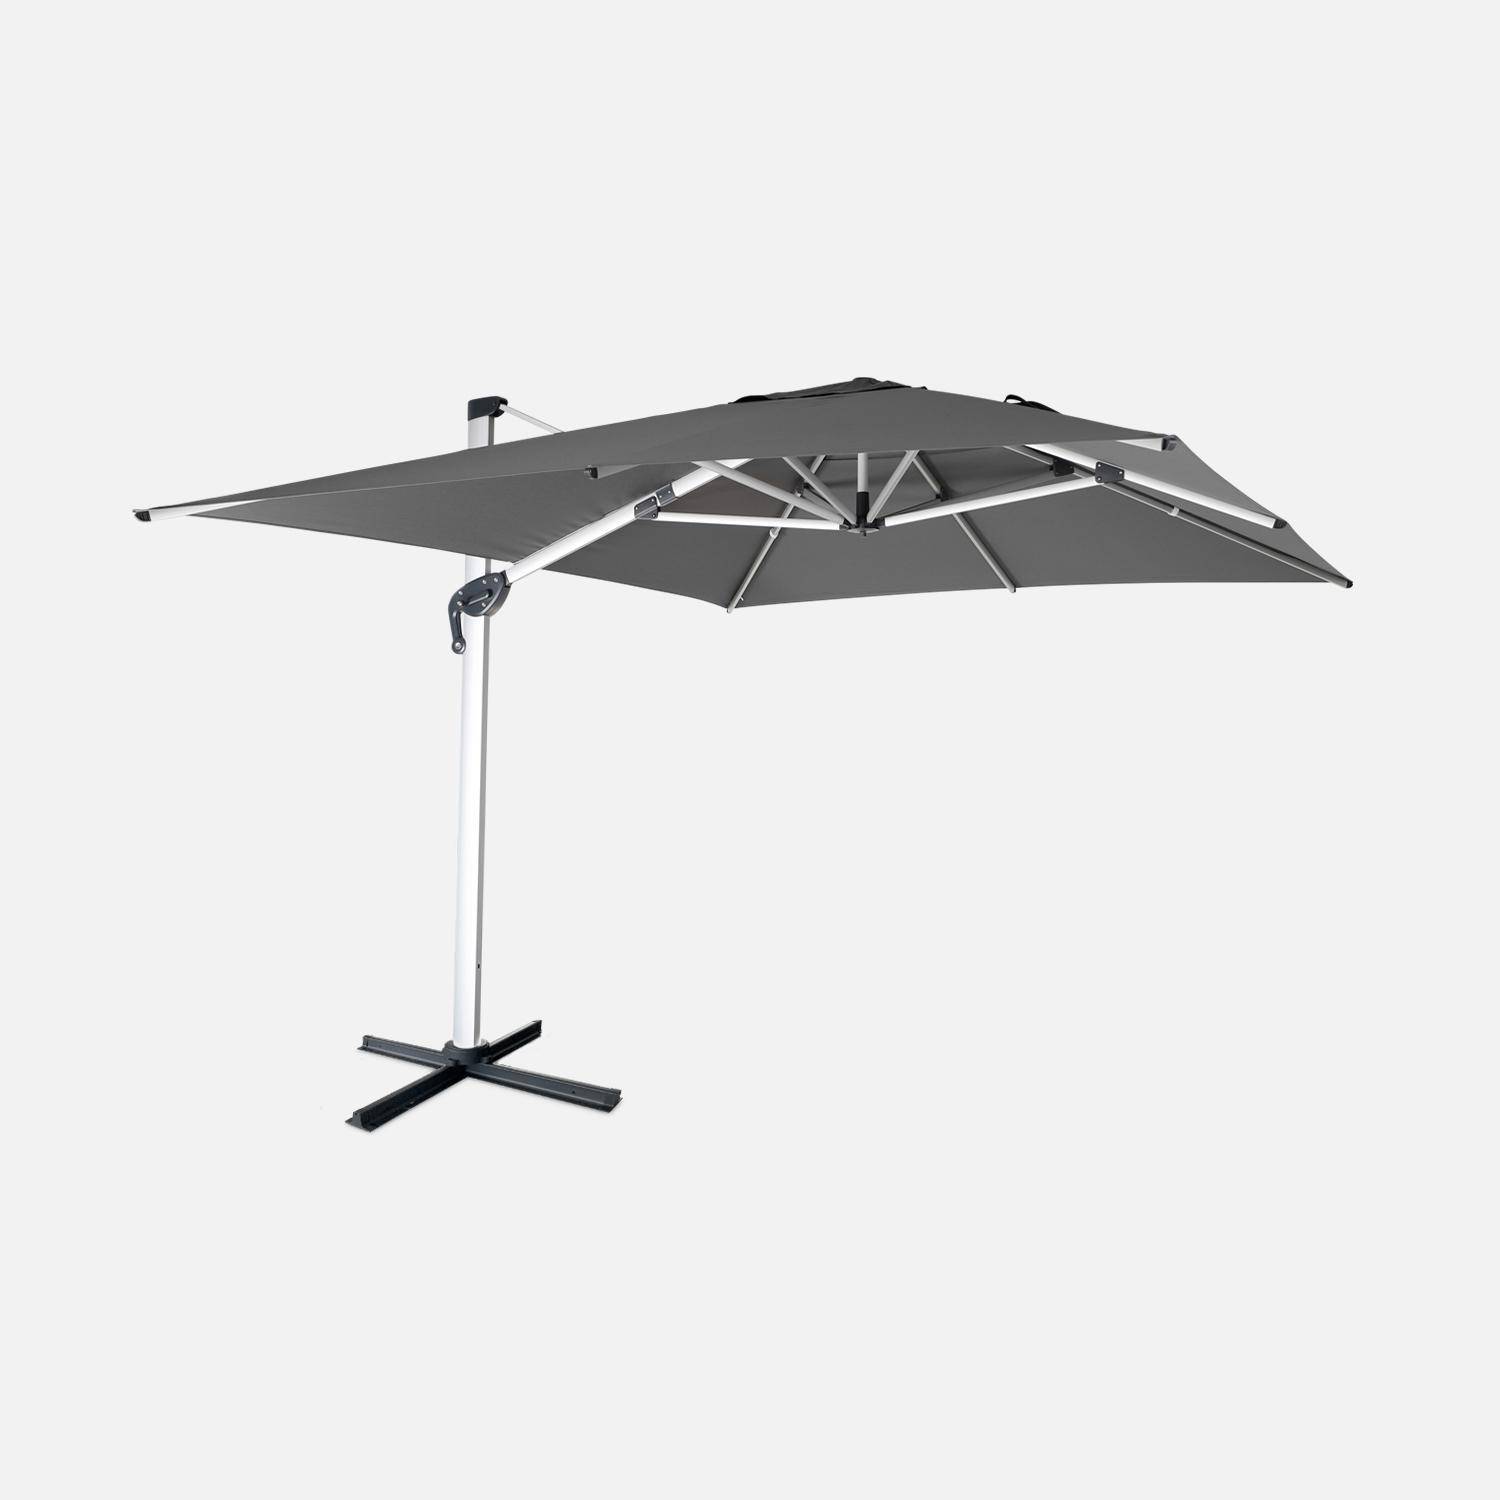 Topkwaliteit parasol, 3x4m, grijs polyester doek, geanodiseerd aluminium frame, hoes inbegrepen,sweeek,Photo1